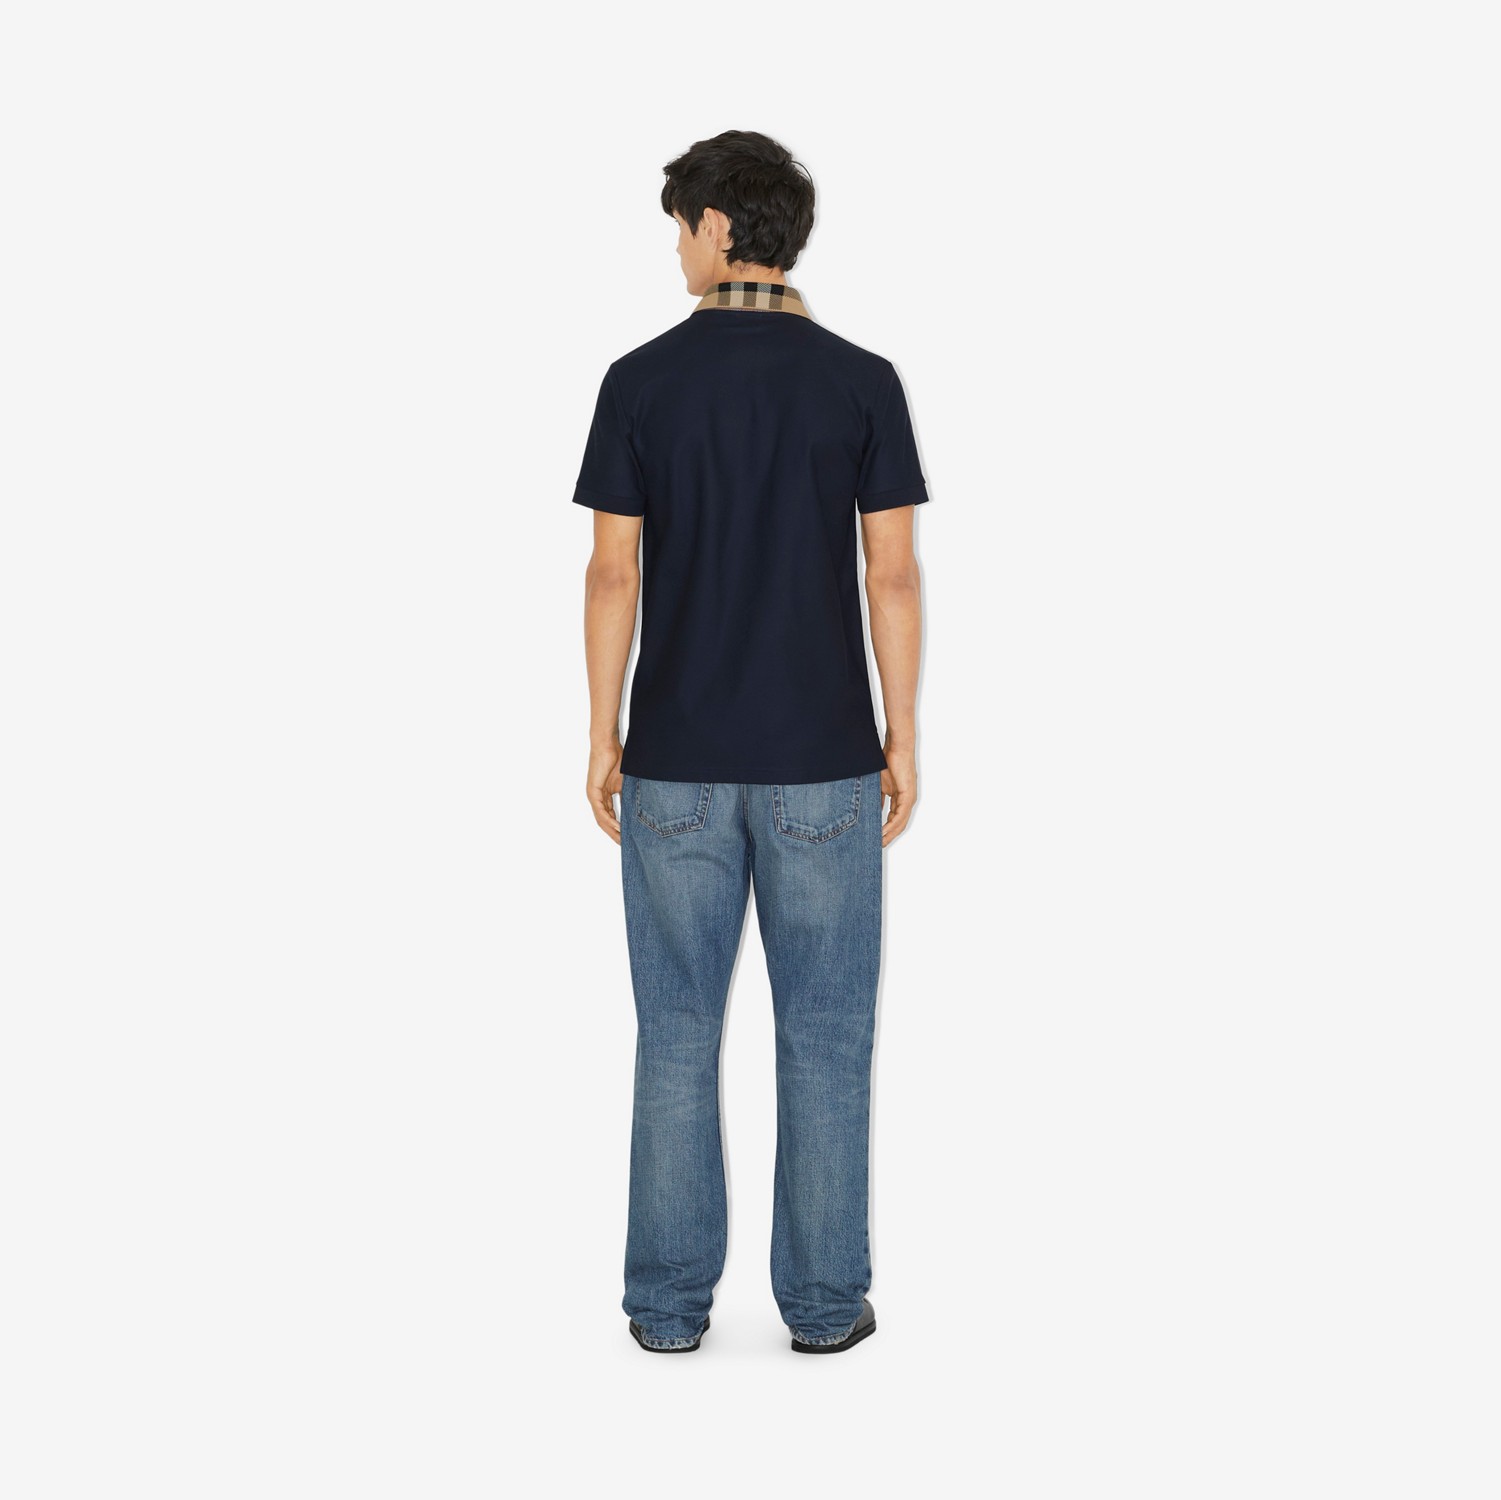 Poloshirt aus Baumwolle mit Check-Kragen (Rauchiges Marineblau) - Herren | Burberry®